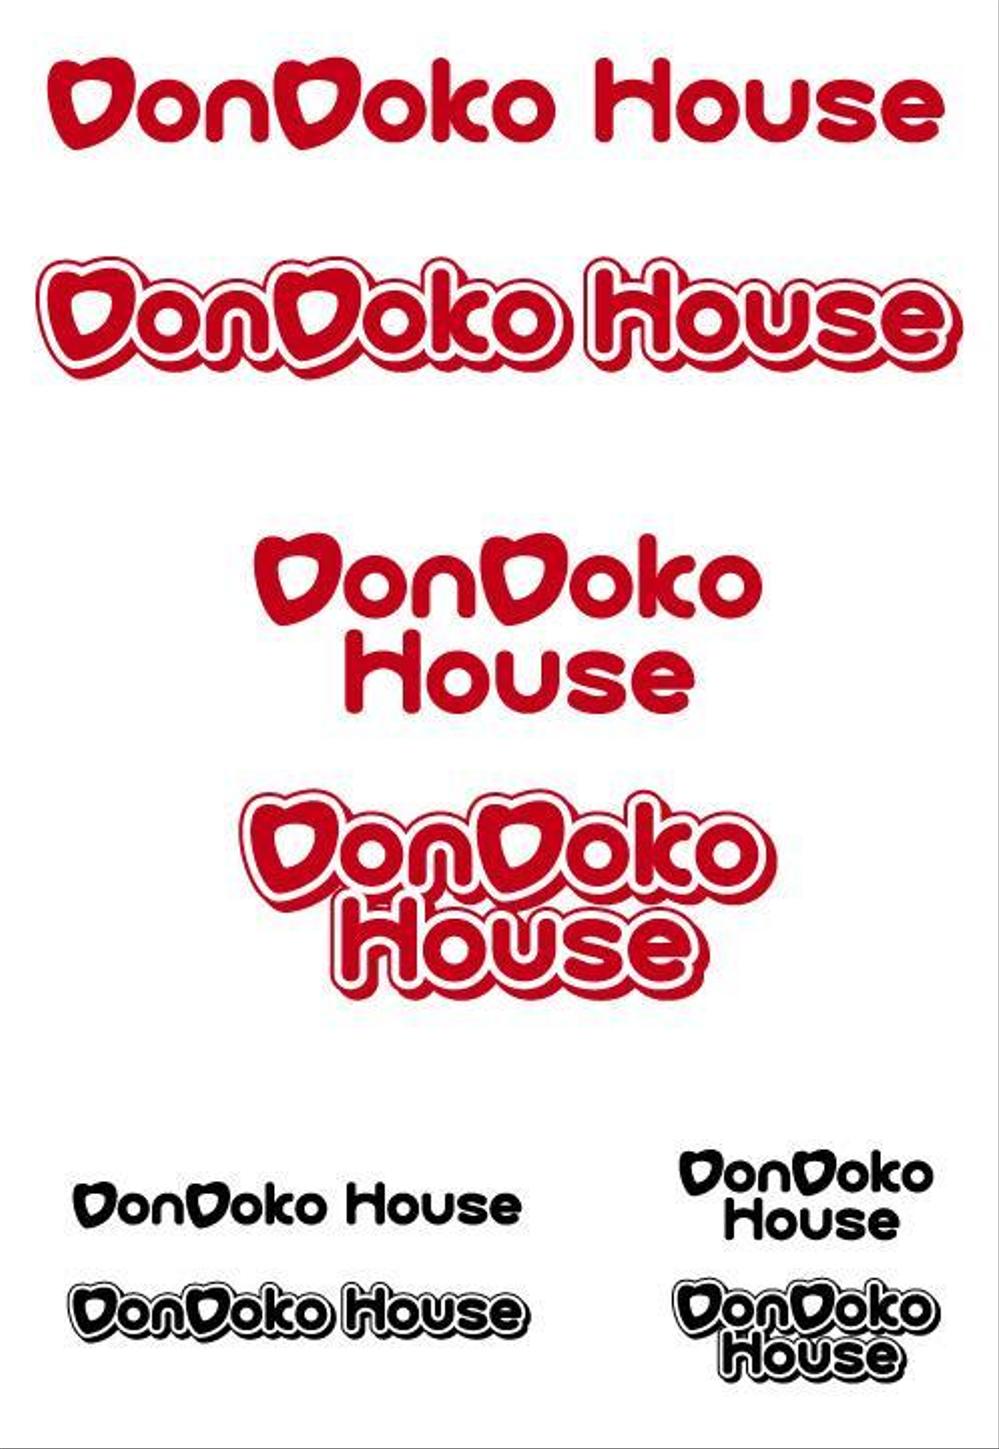 dondoko_logo.jpg